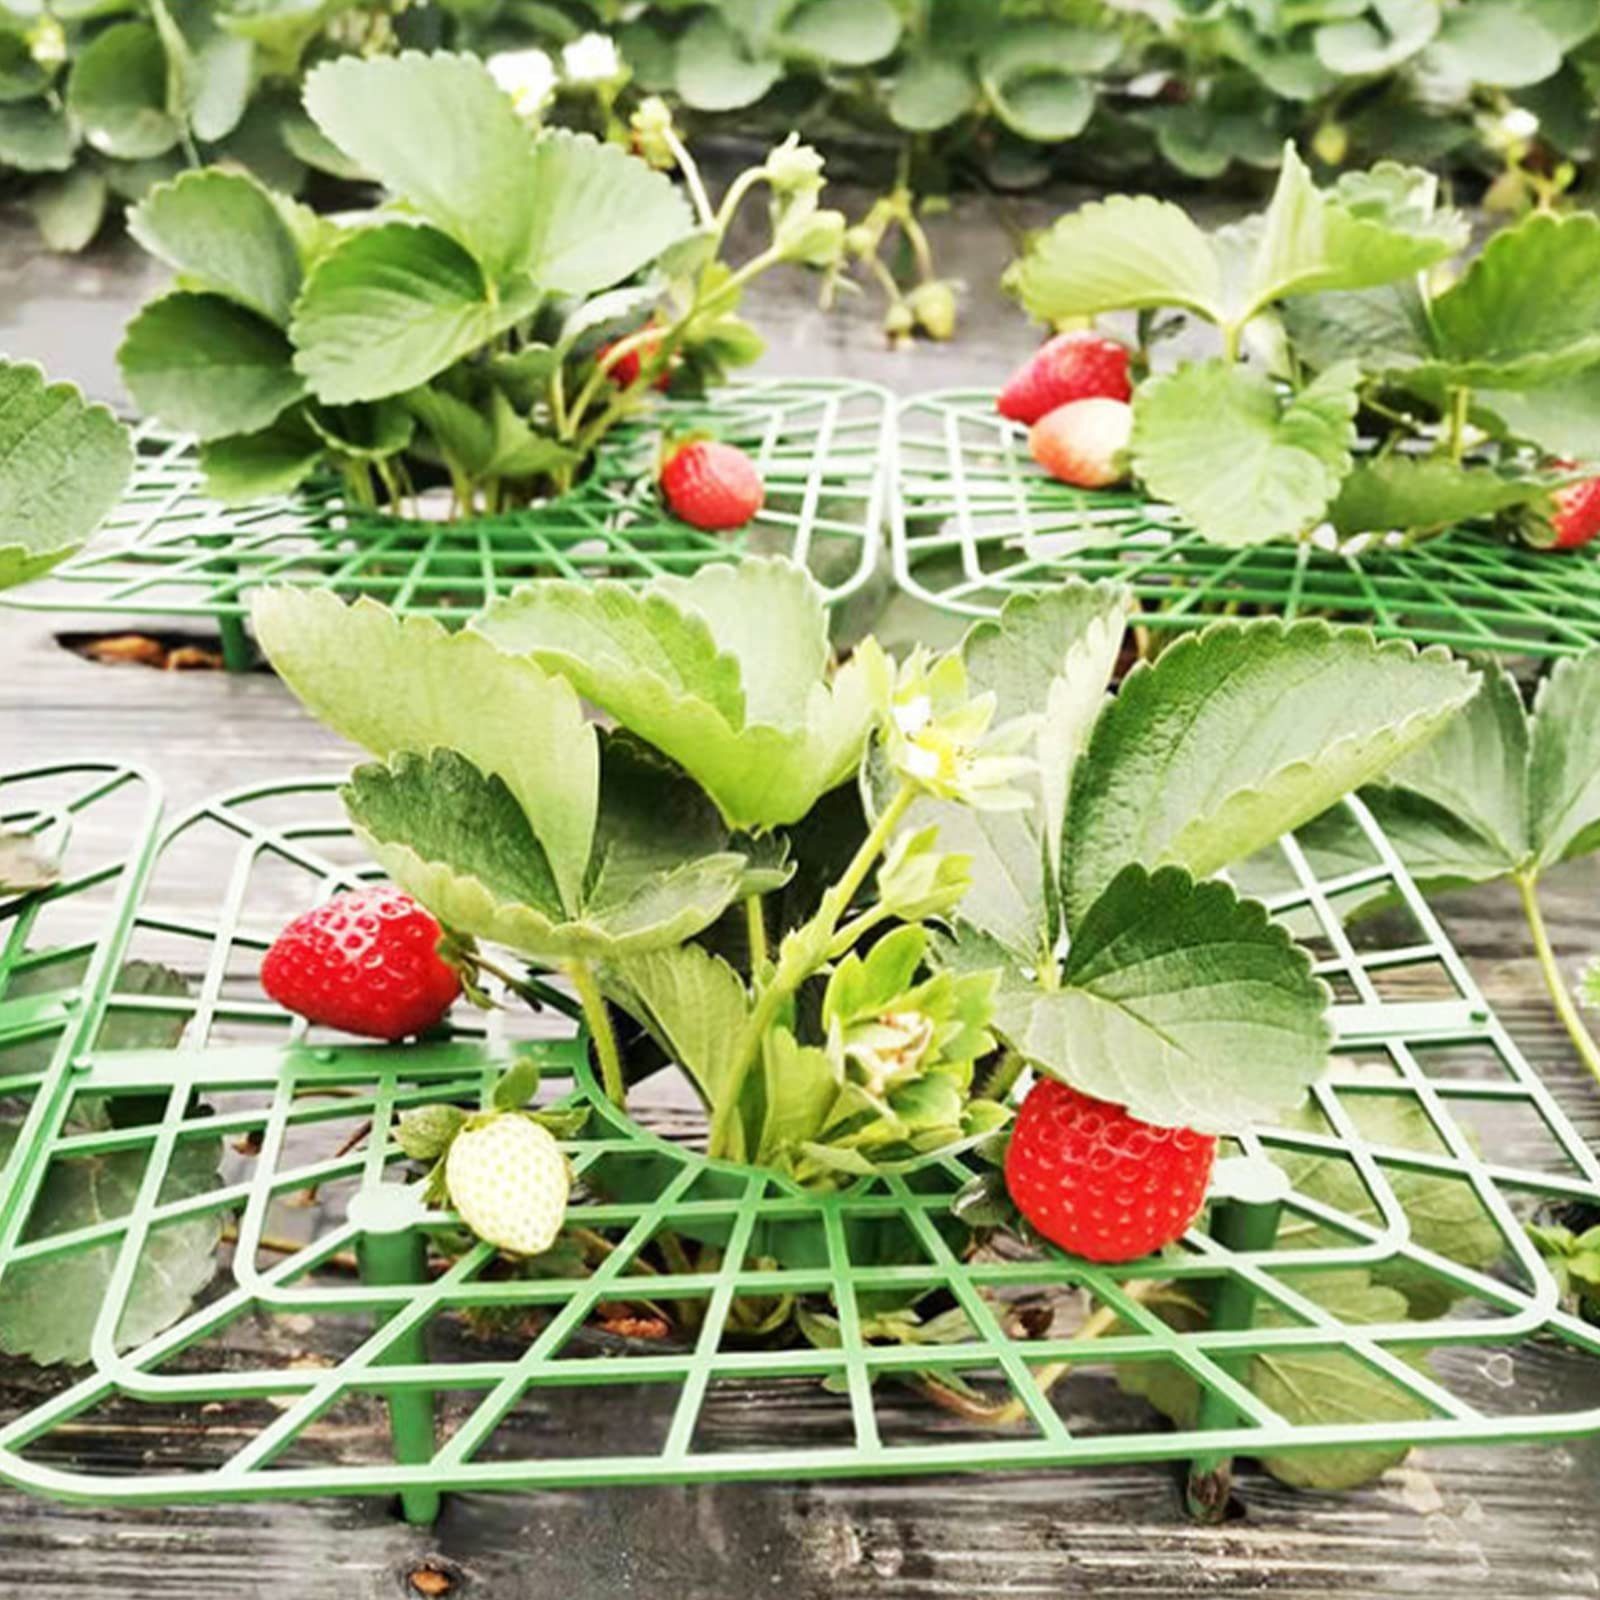 8x Obst/Gemüse,Kunststoff SEEZSSA für Erdbeeren von Beinen,Erdbeer-Pflanzenständer, 4 Erdbeerstützen mit Pflanzenregal,Balkon-Gemüseregal,Erhöhung Blumenständer